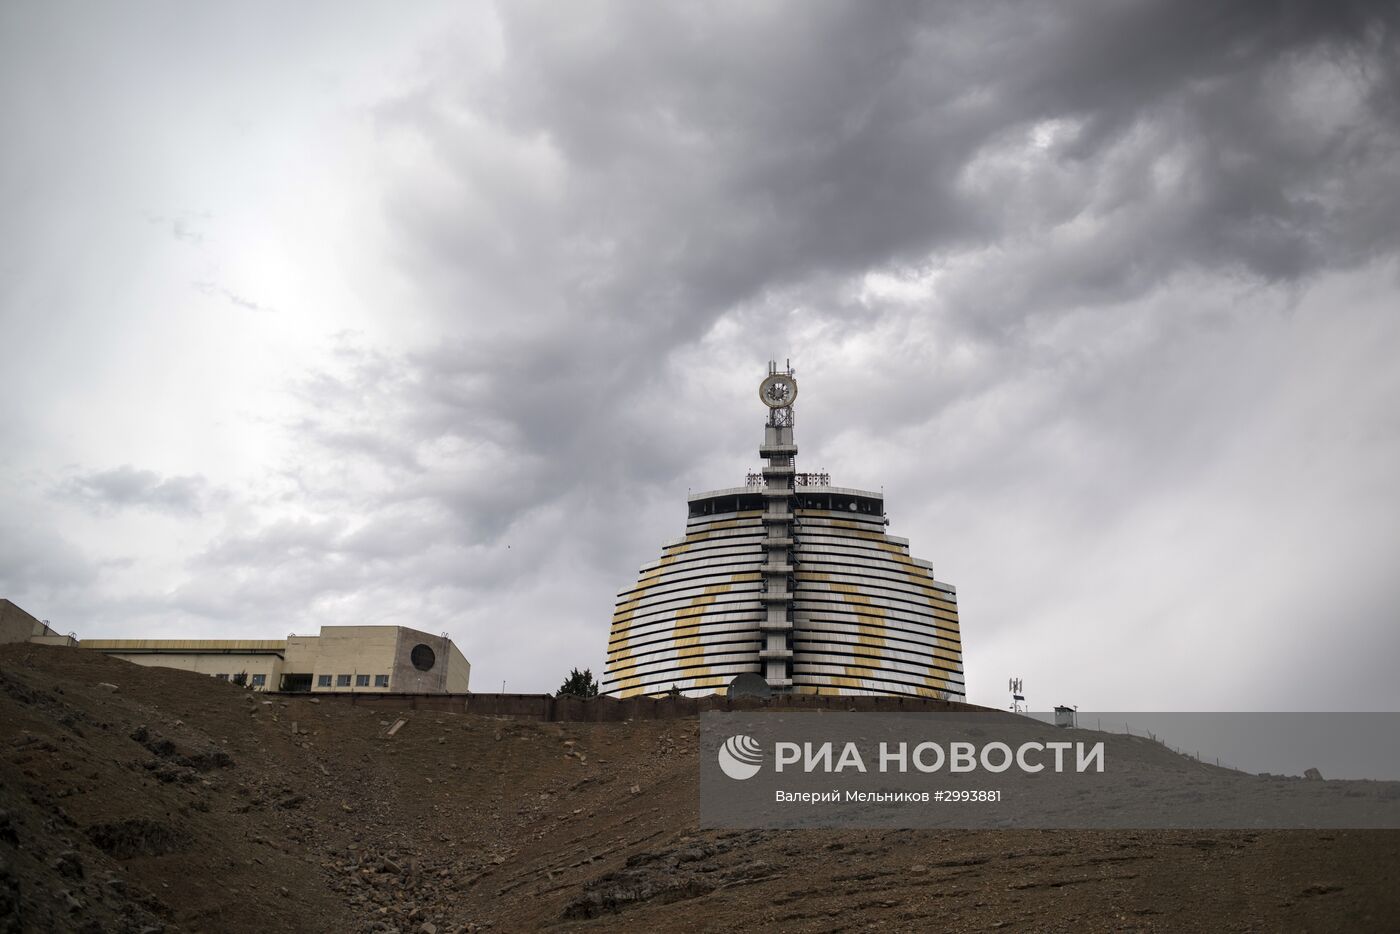 Физико-технический институт НПО "Физика-Солнце" в Узбекистане